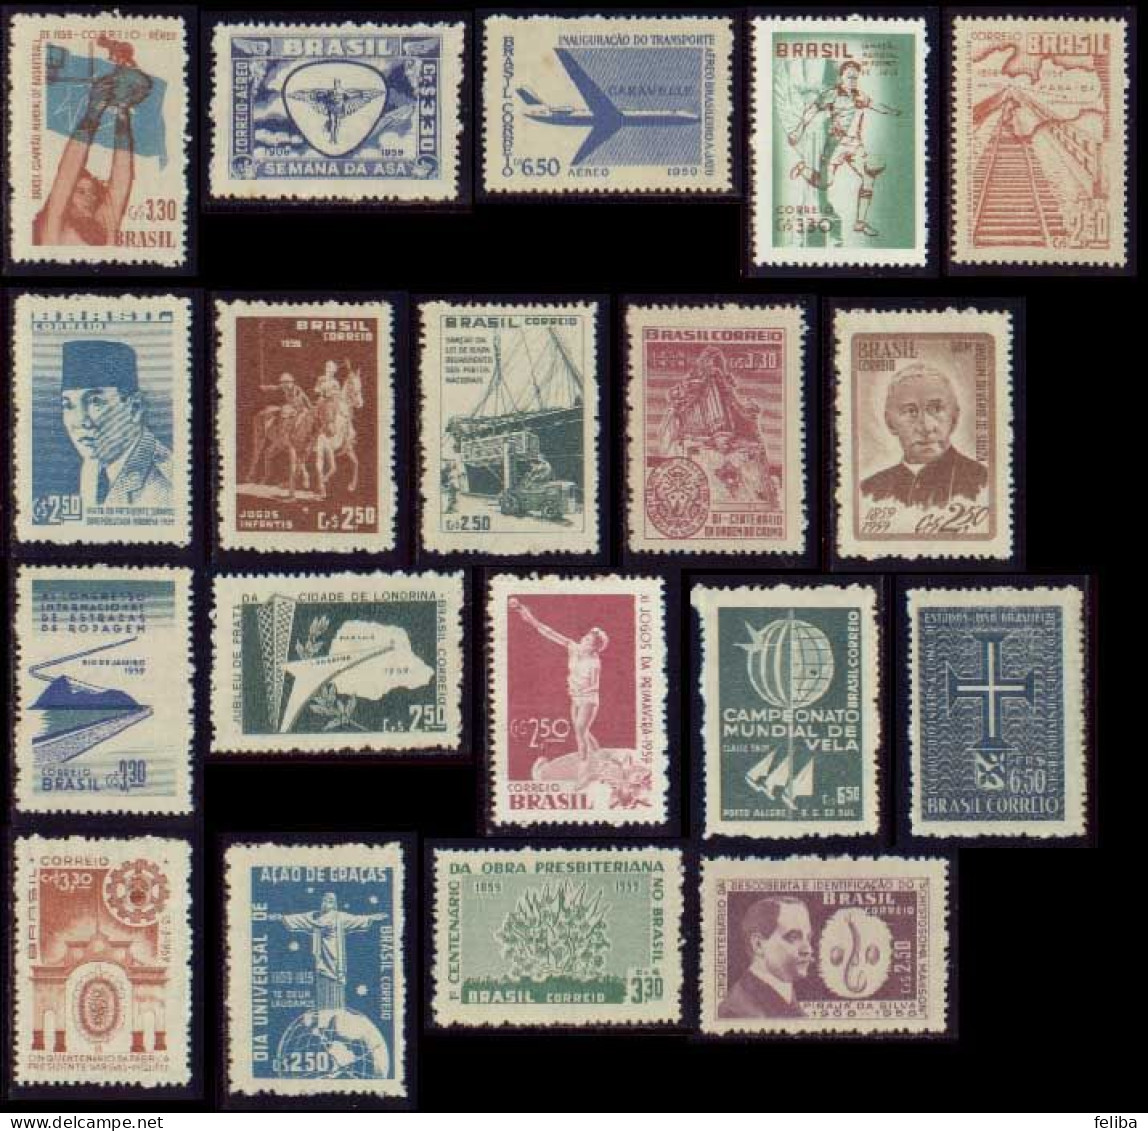 Brazil 1959 Unused Commemorative Stamps - Annate Complete